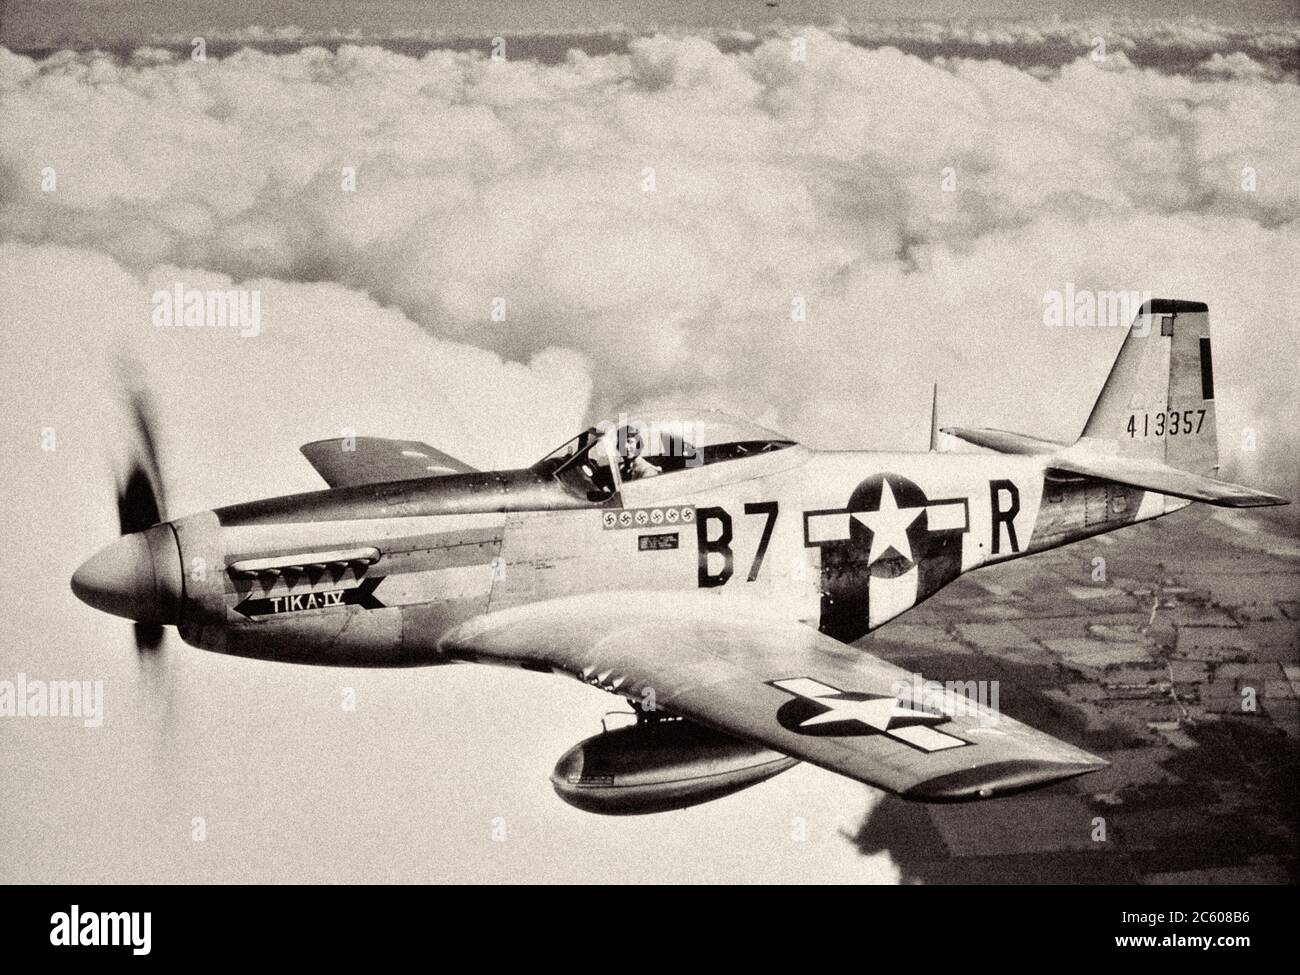 Leutnant Vernon Richards der 361st Fighter Group pilotiert während einer Bombereskortmission seinen P-51D Mustang, Spitzname ‘Tika IV’. 1944 Stockfoto